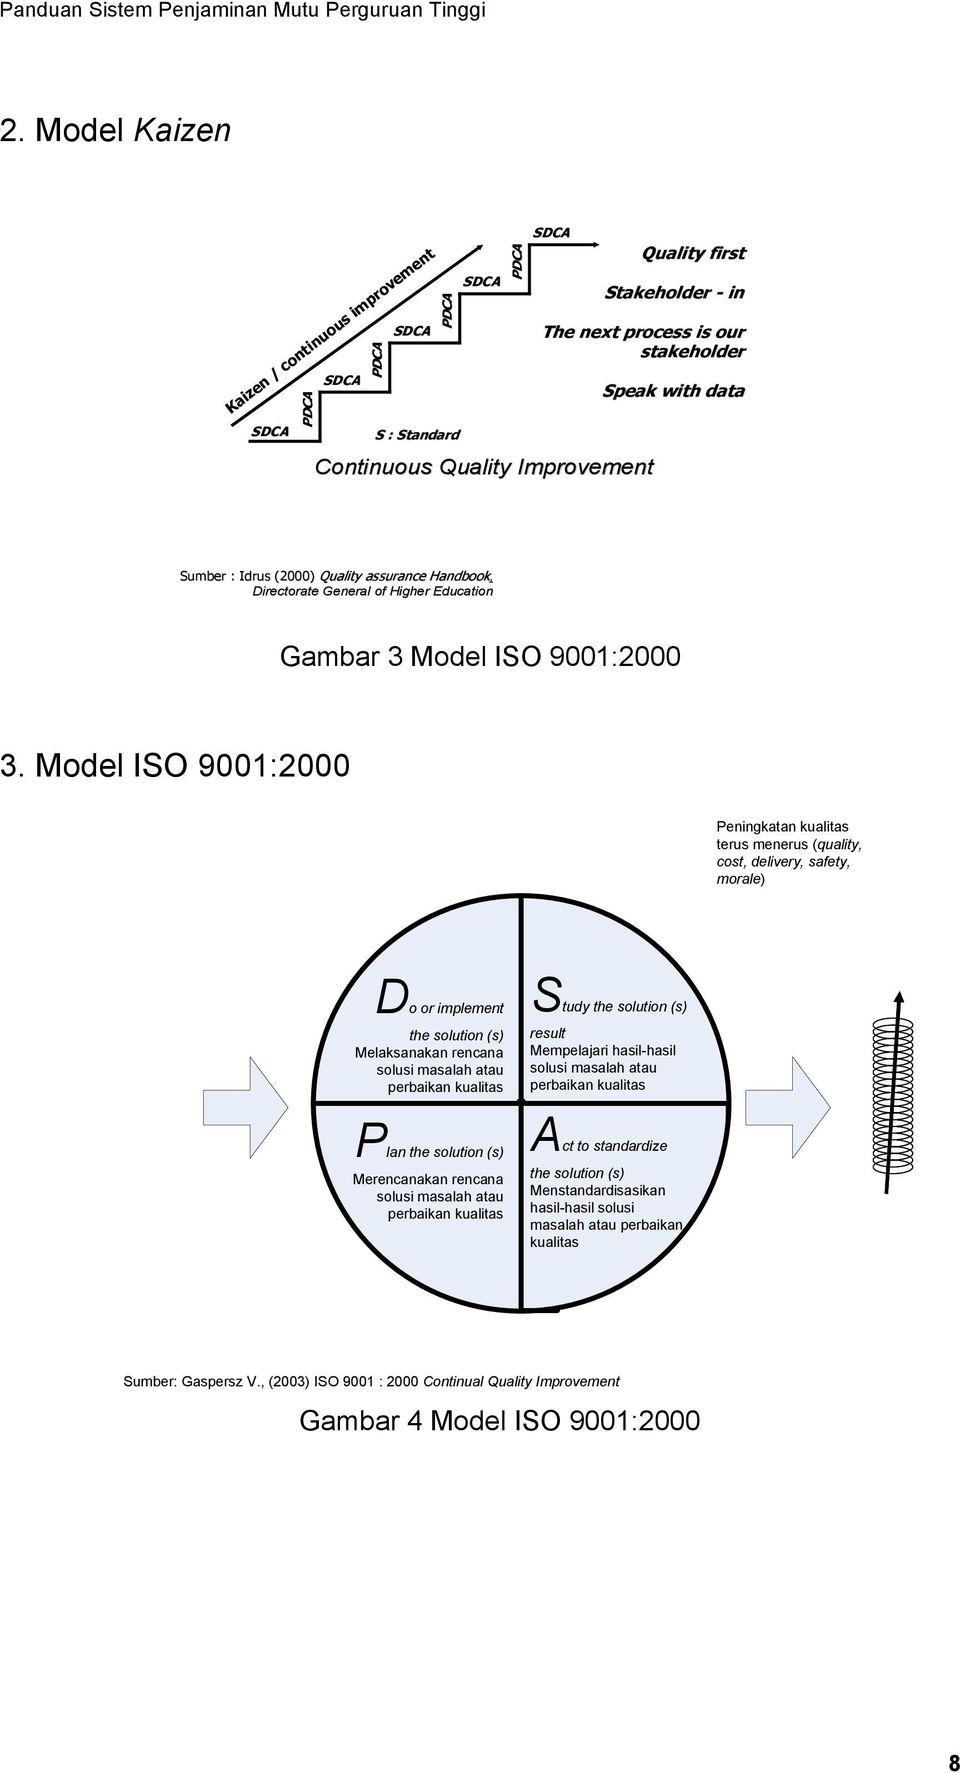 Model ISO 9001:2000 Peningkatan kualitas terus menerus (quality, cost, delivery, safety, morale) Do or implement the solution (s) Melaksanakan rencana solusi masalah atau perbaikan kualitas Study the